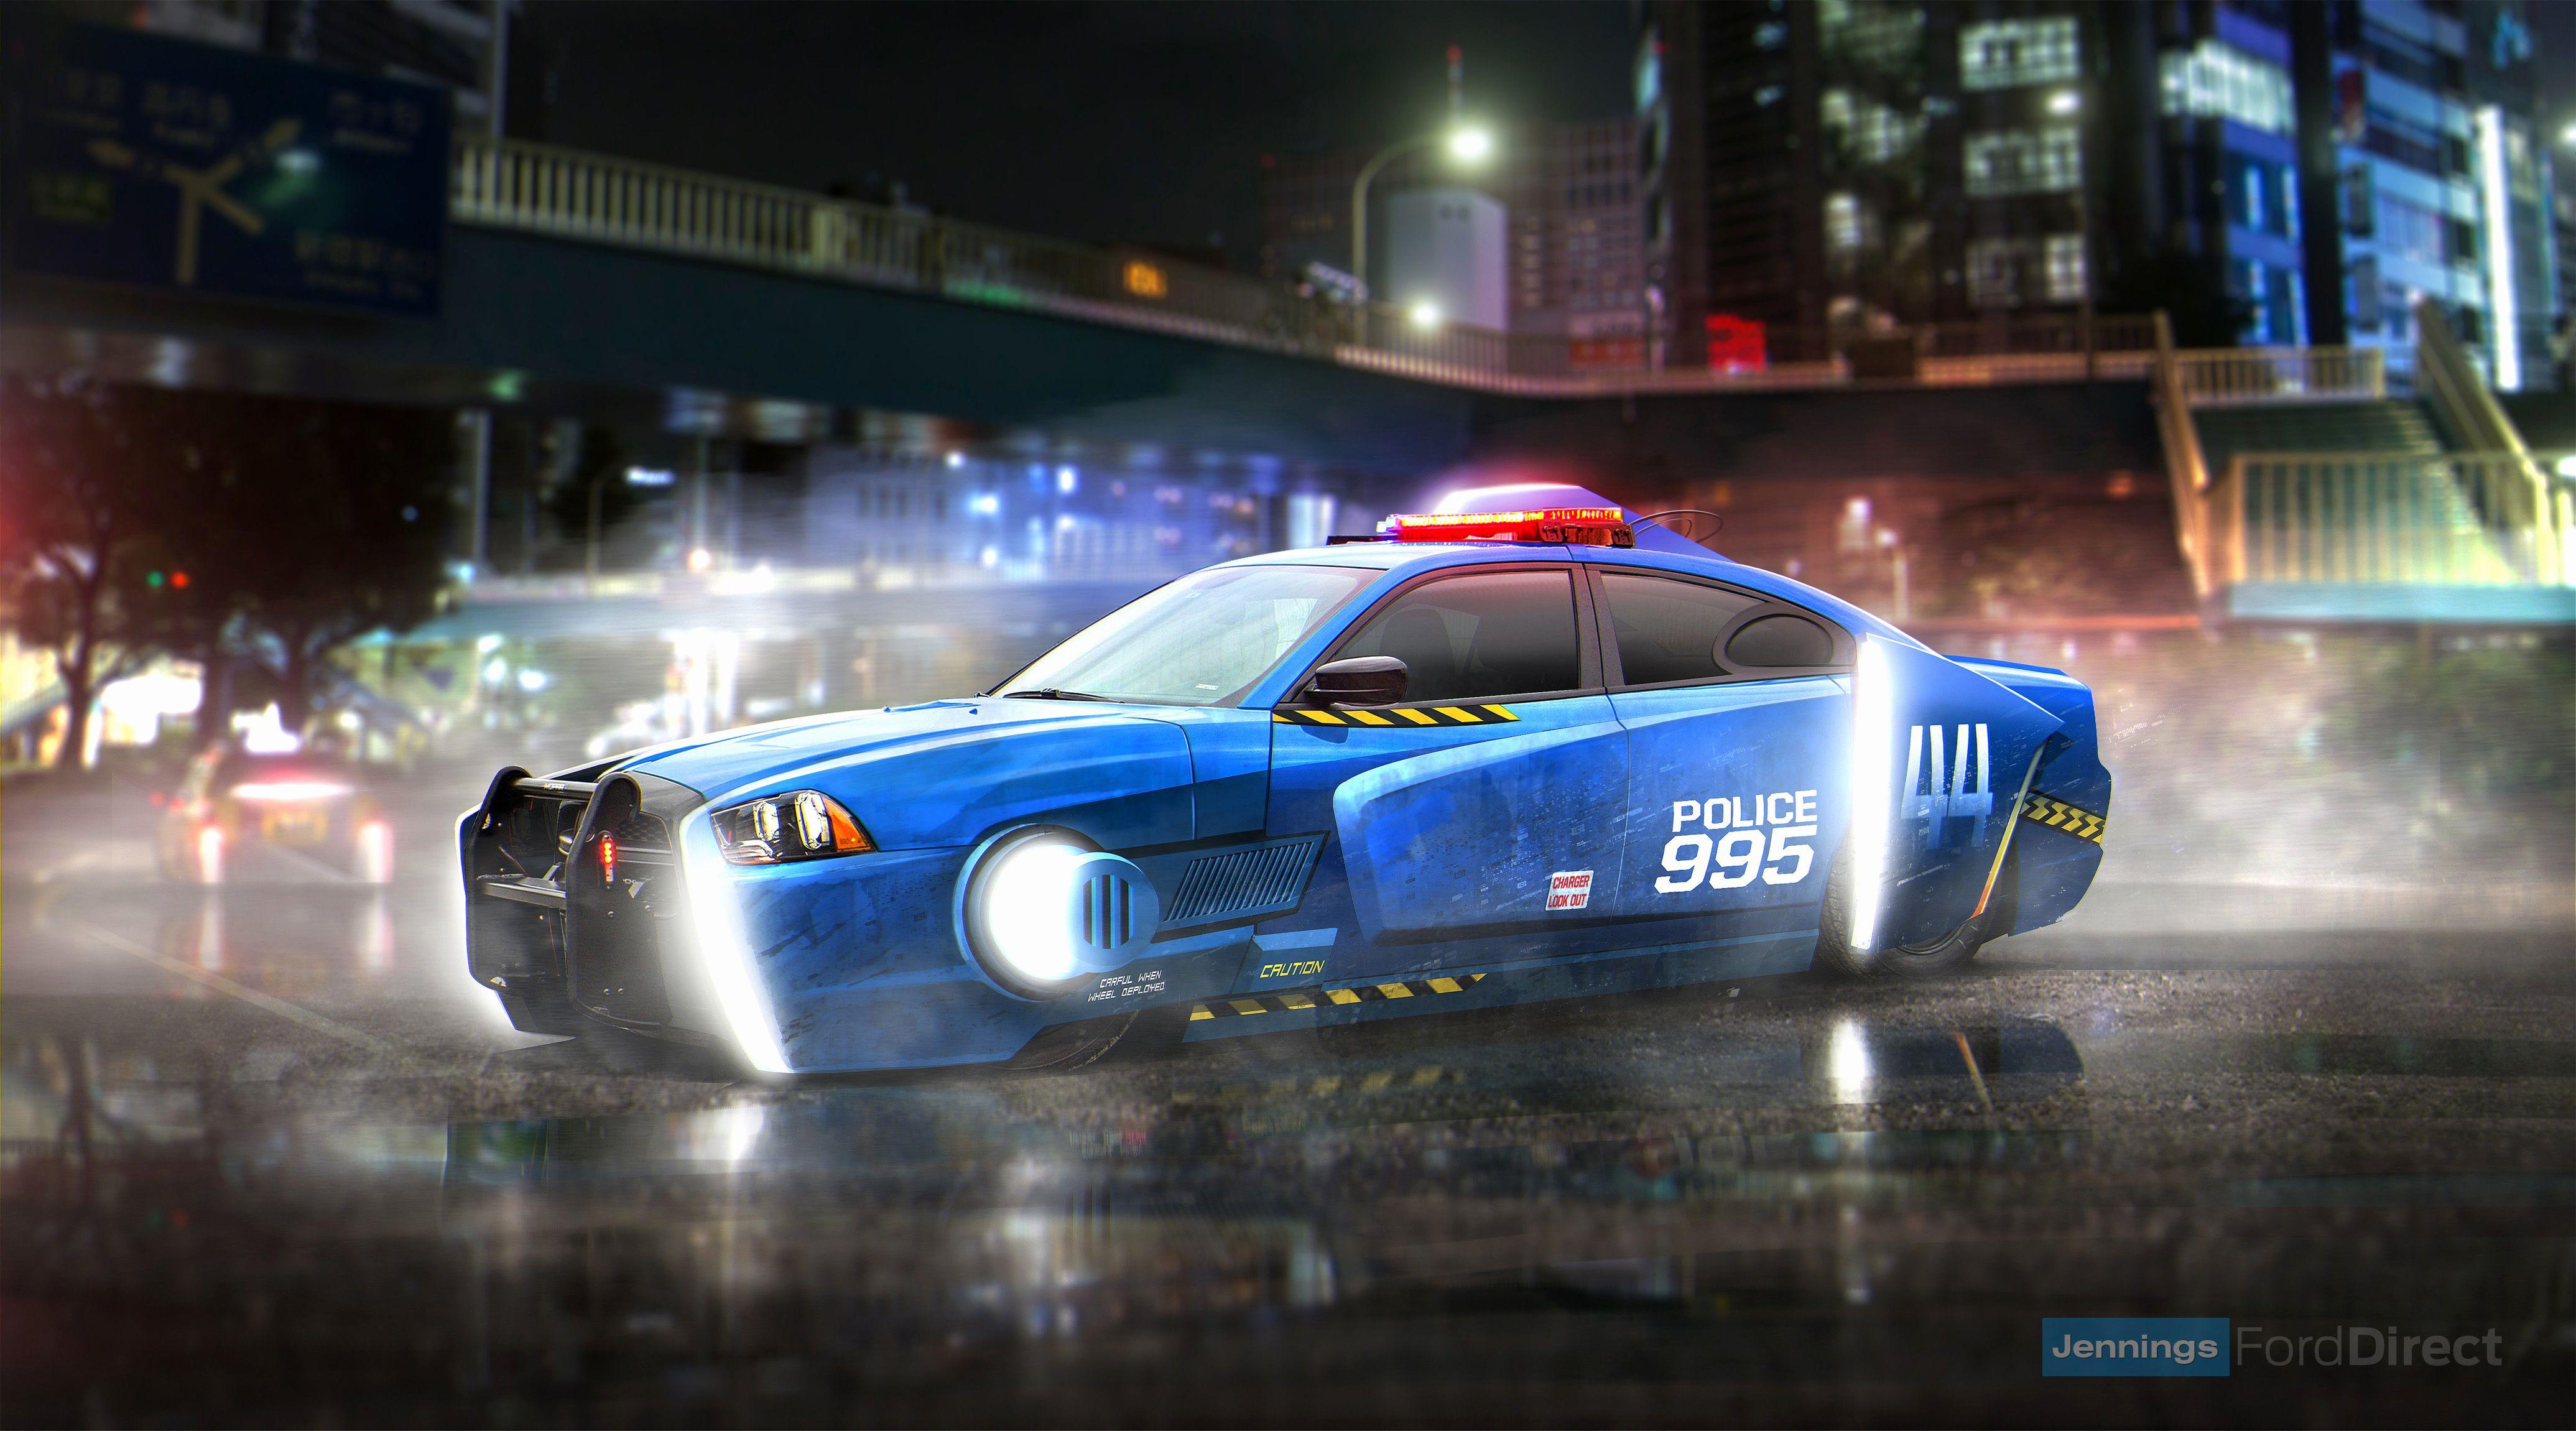 Police Car Wallpaper New Blade Runner Spinner Dodge Charger